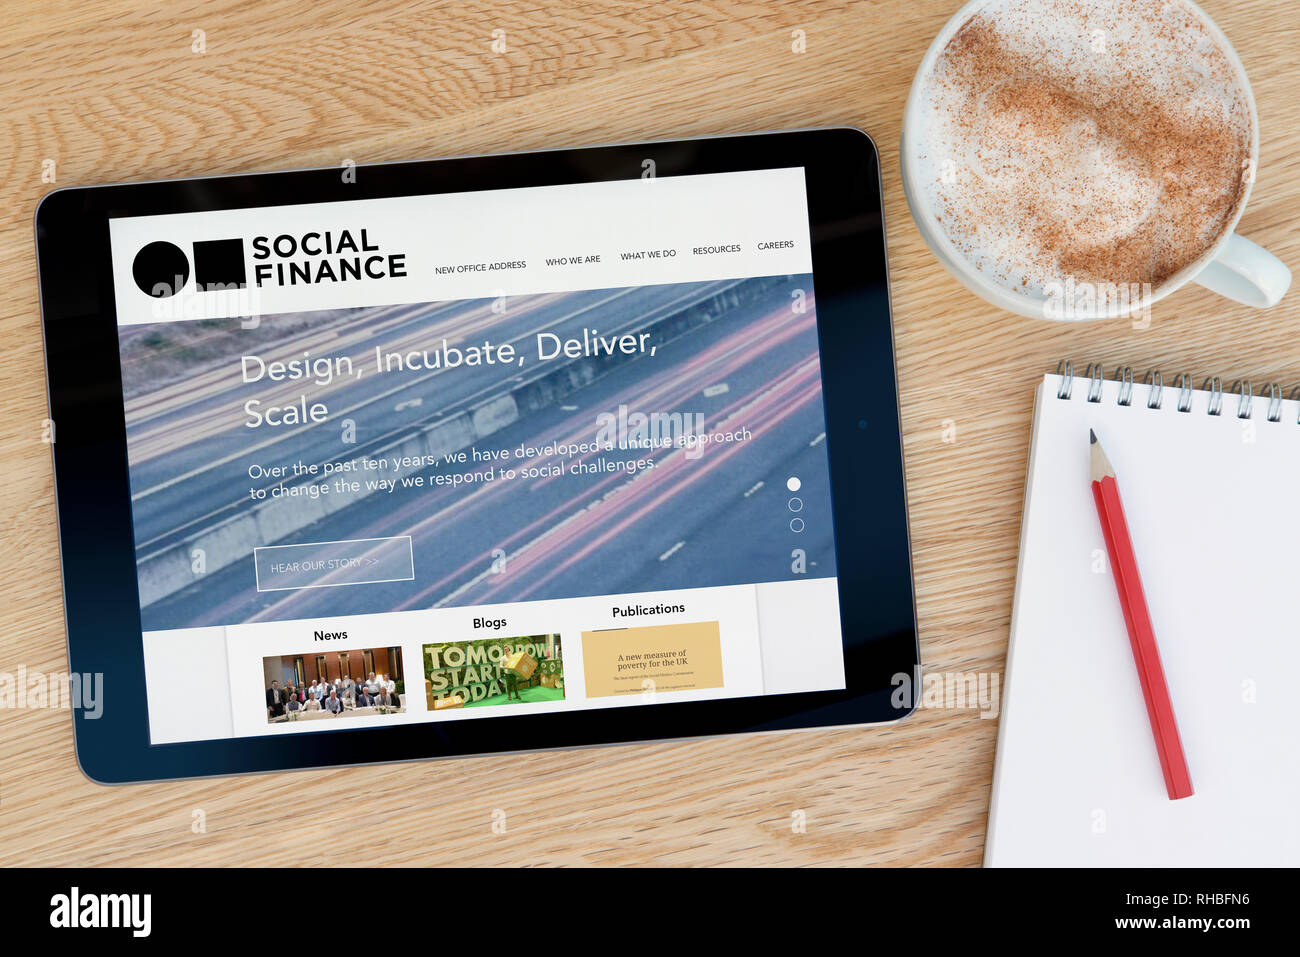 Die Social Finance website Funktionen auf einem iPad Tablet Gerät, das auf einem Tisch liegt neben einem Notizblock (nur redaktionelle Nutzung). Stockfoto